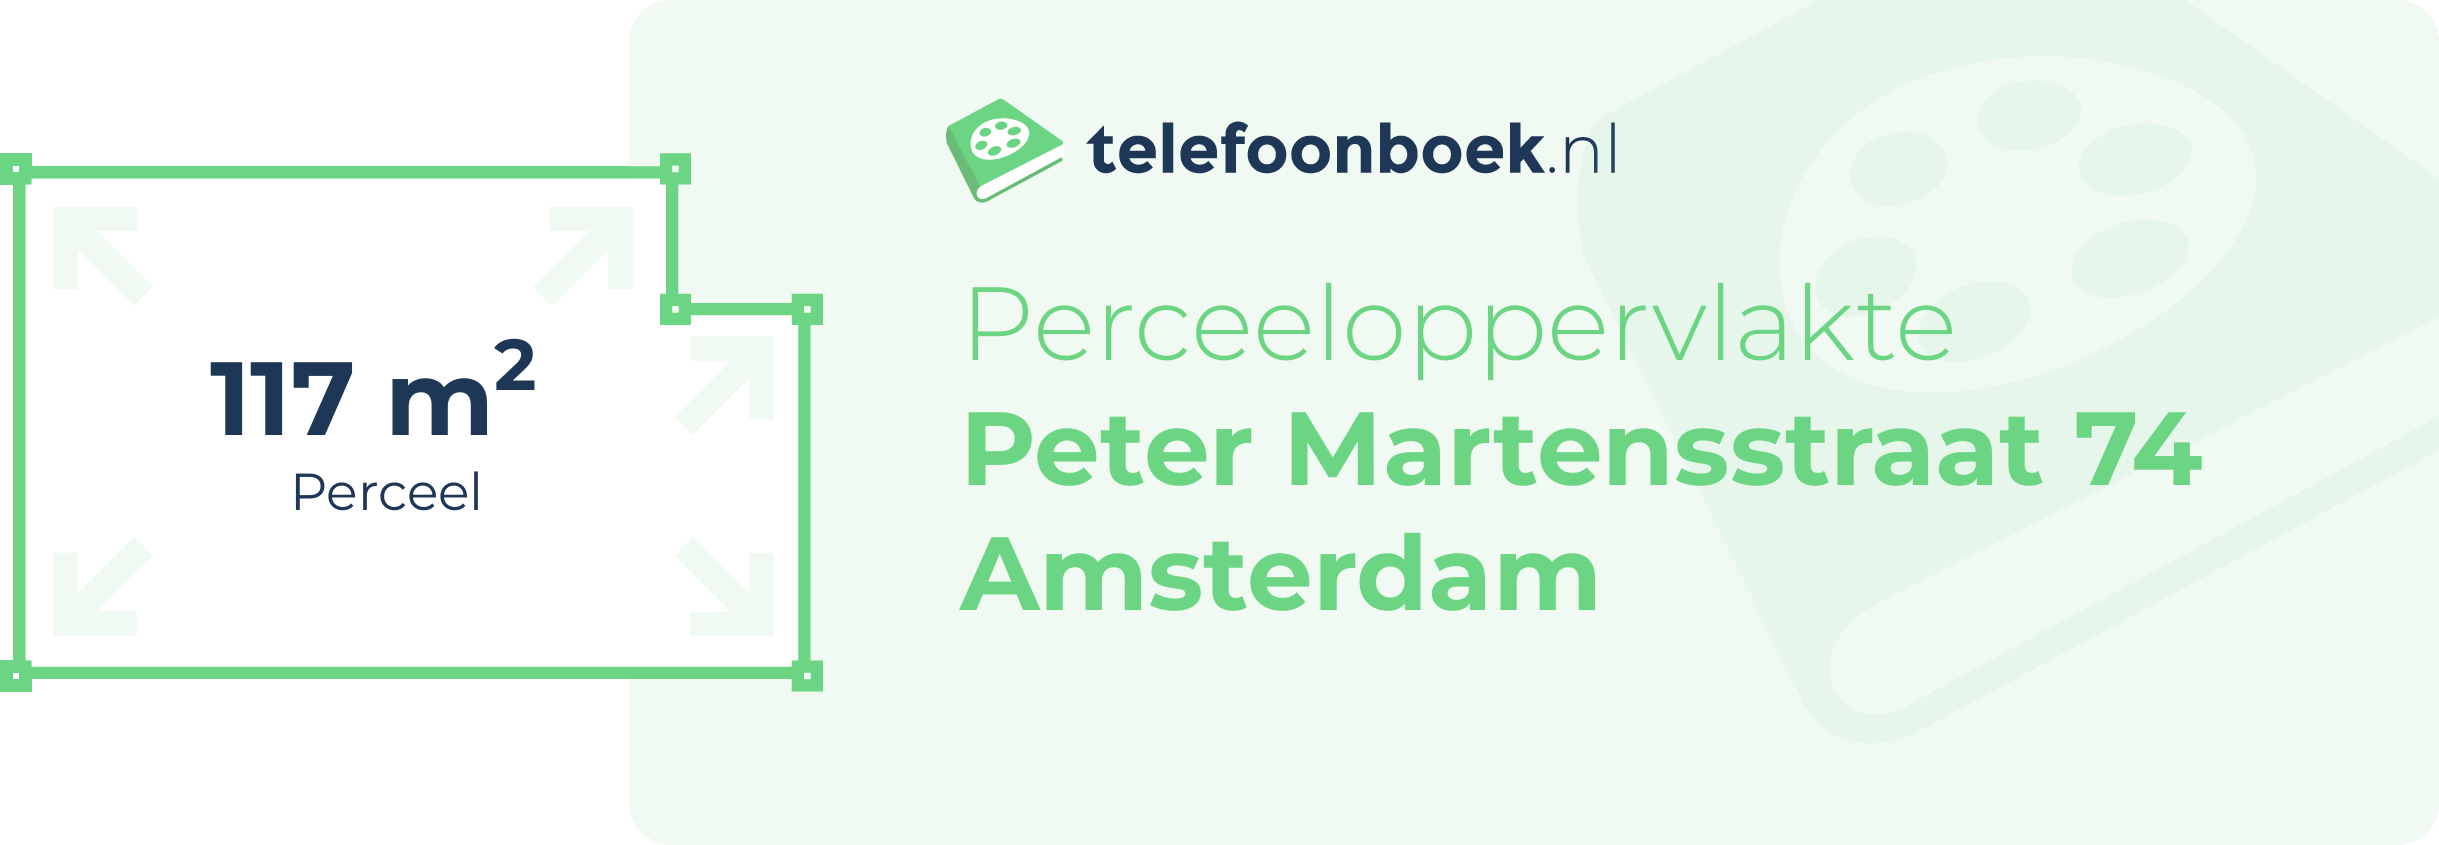 Perceeloppervlakte Peter Martensstraat 74 Amsterdam